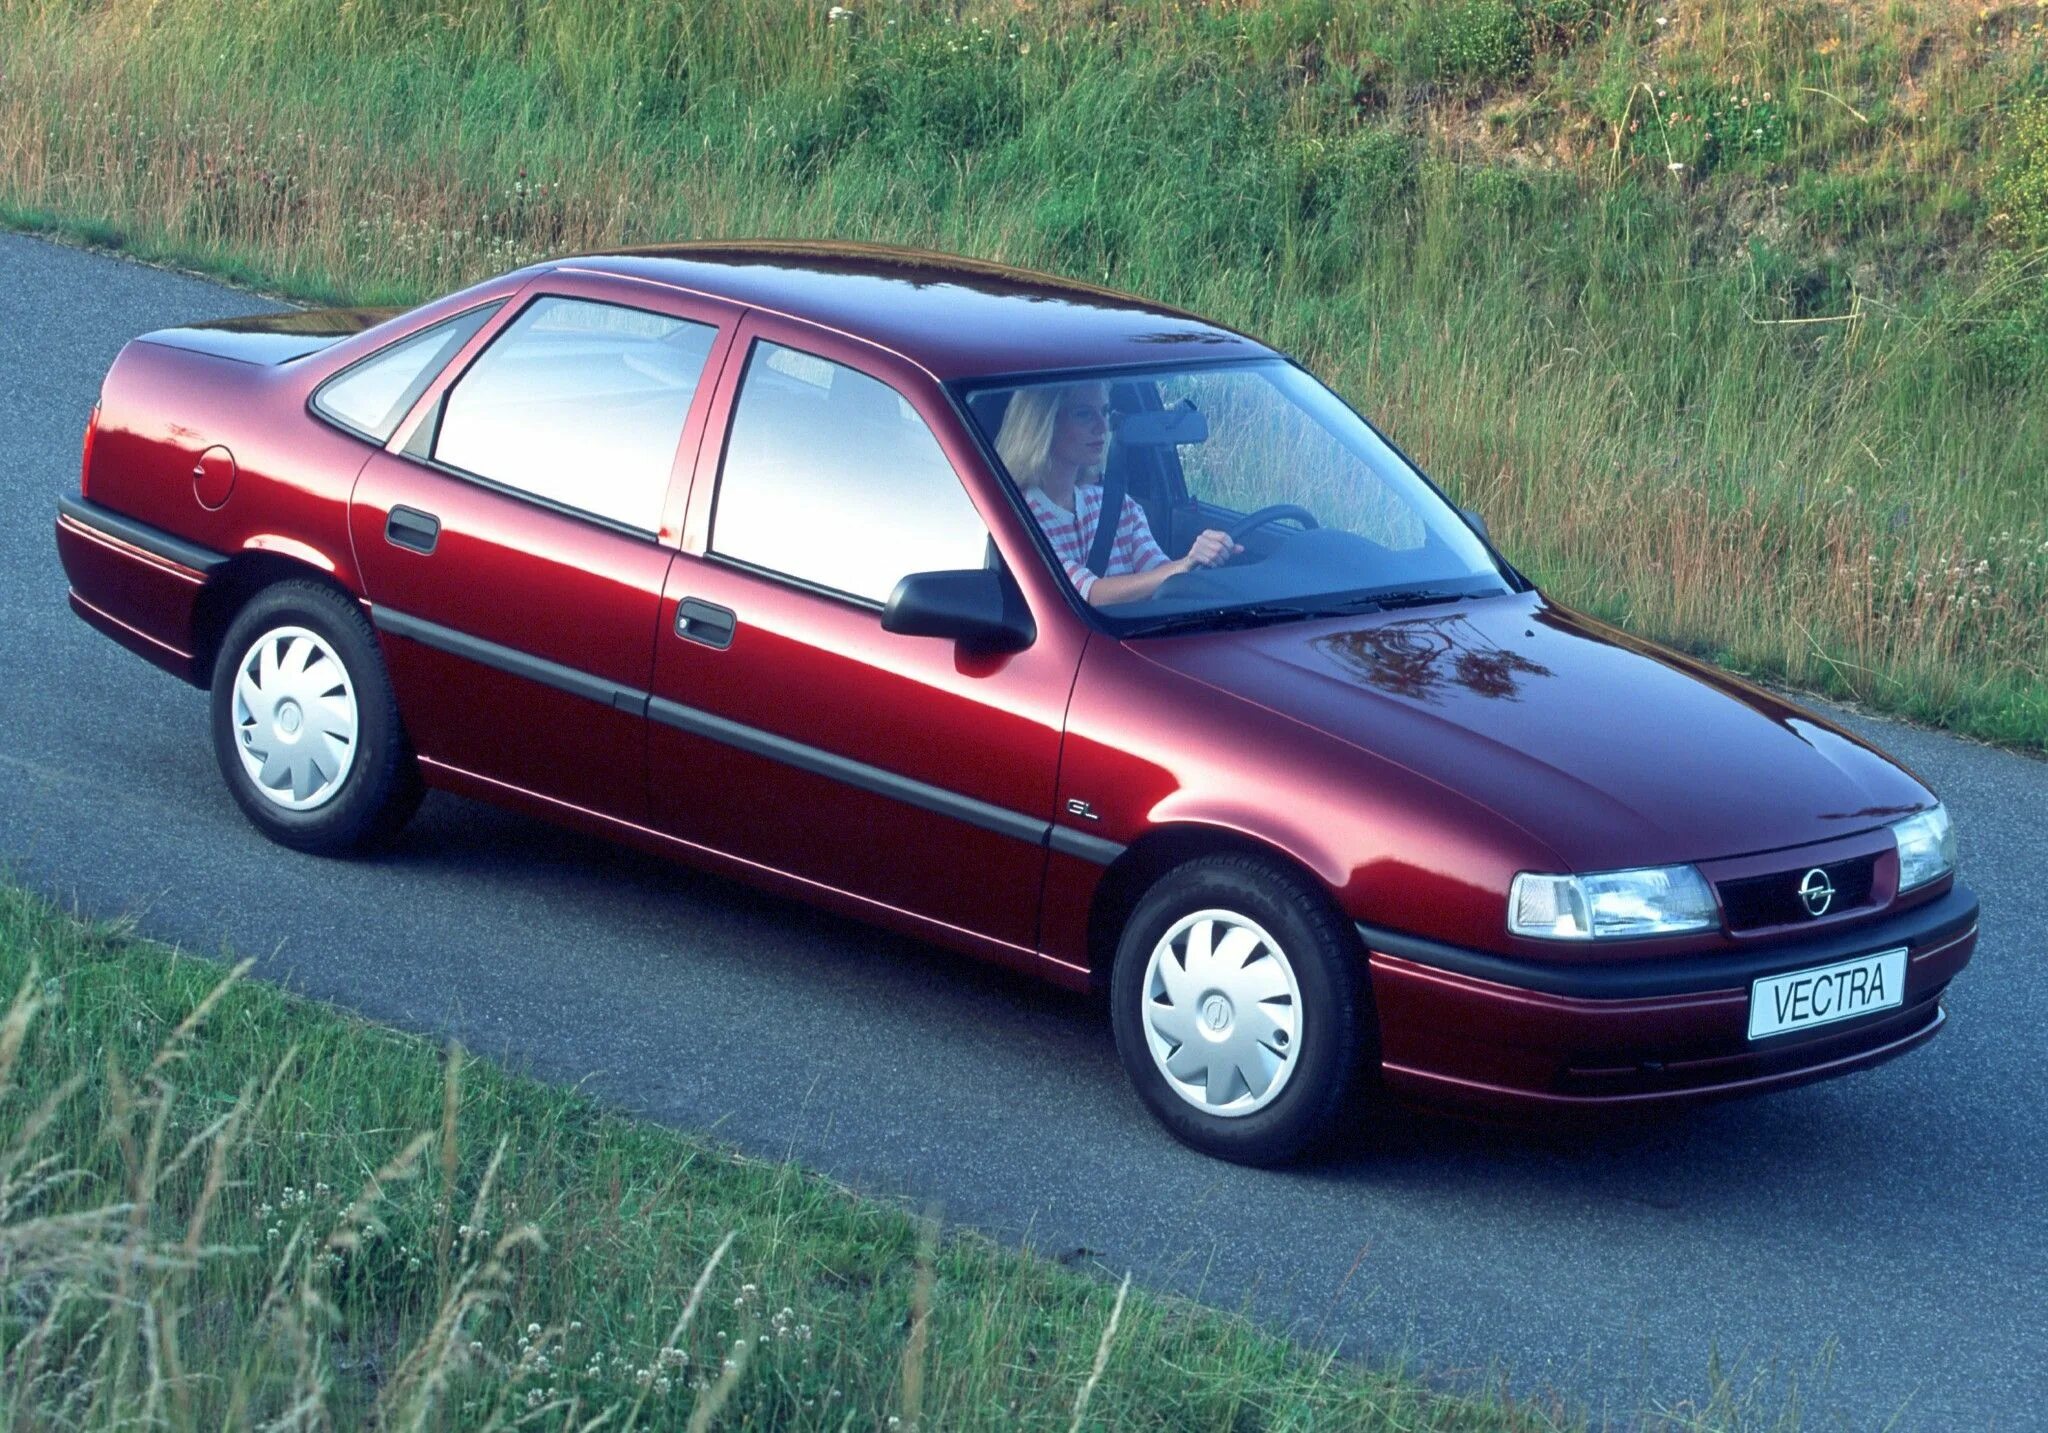 Opel Vectra 1995. Опель Вектра 1995 седан. Opel Vectra 1.8. Opel Vectra a 1988 1995 седан. Опель вектра 98 года